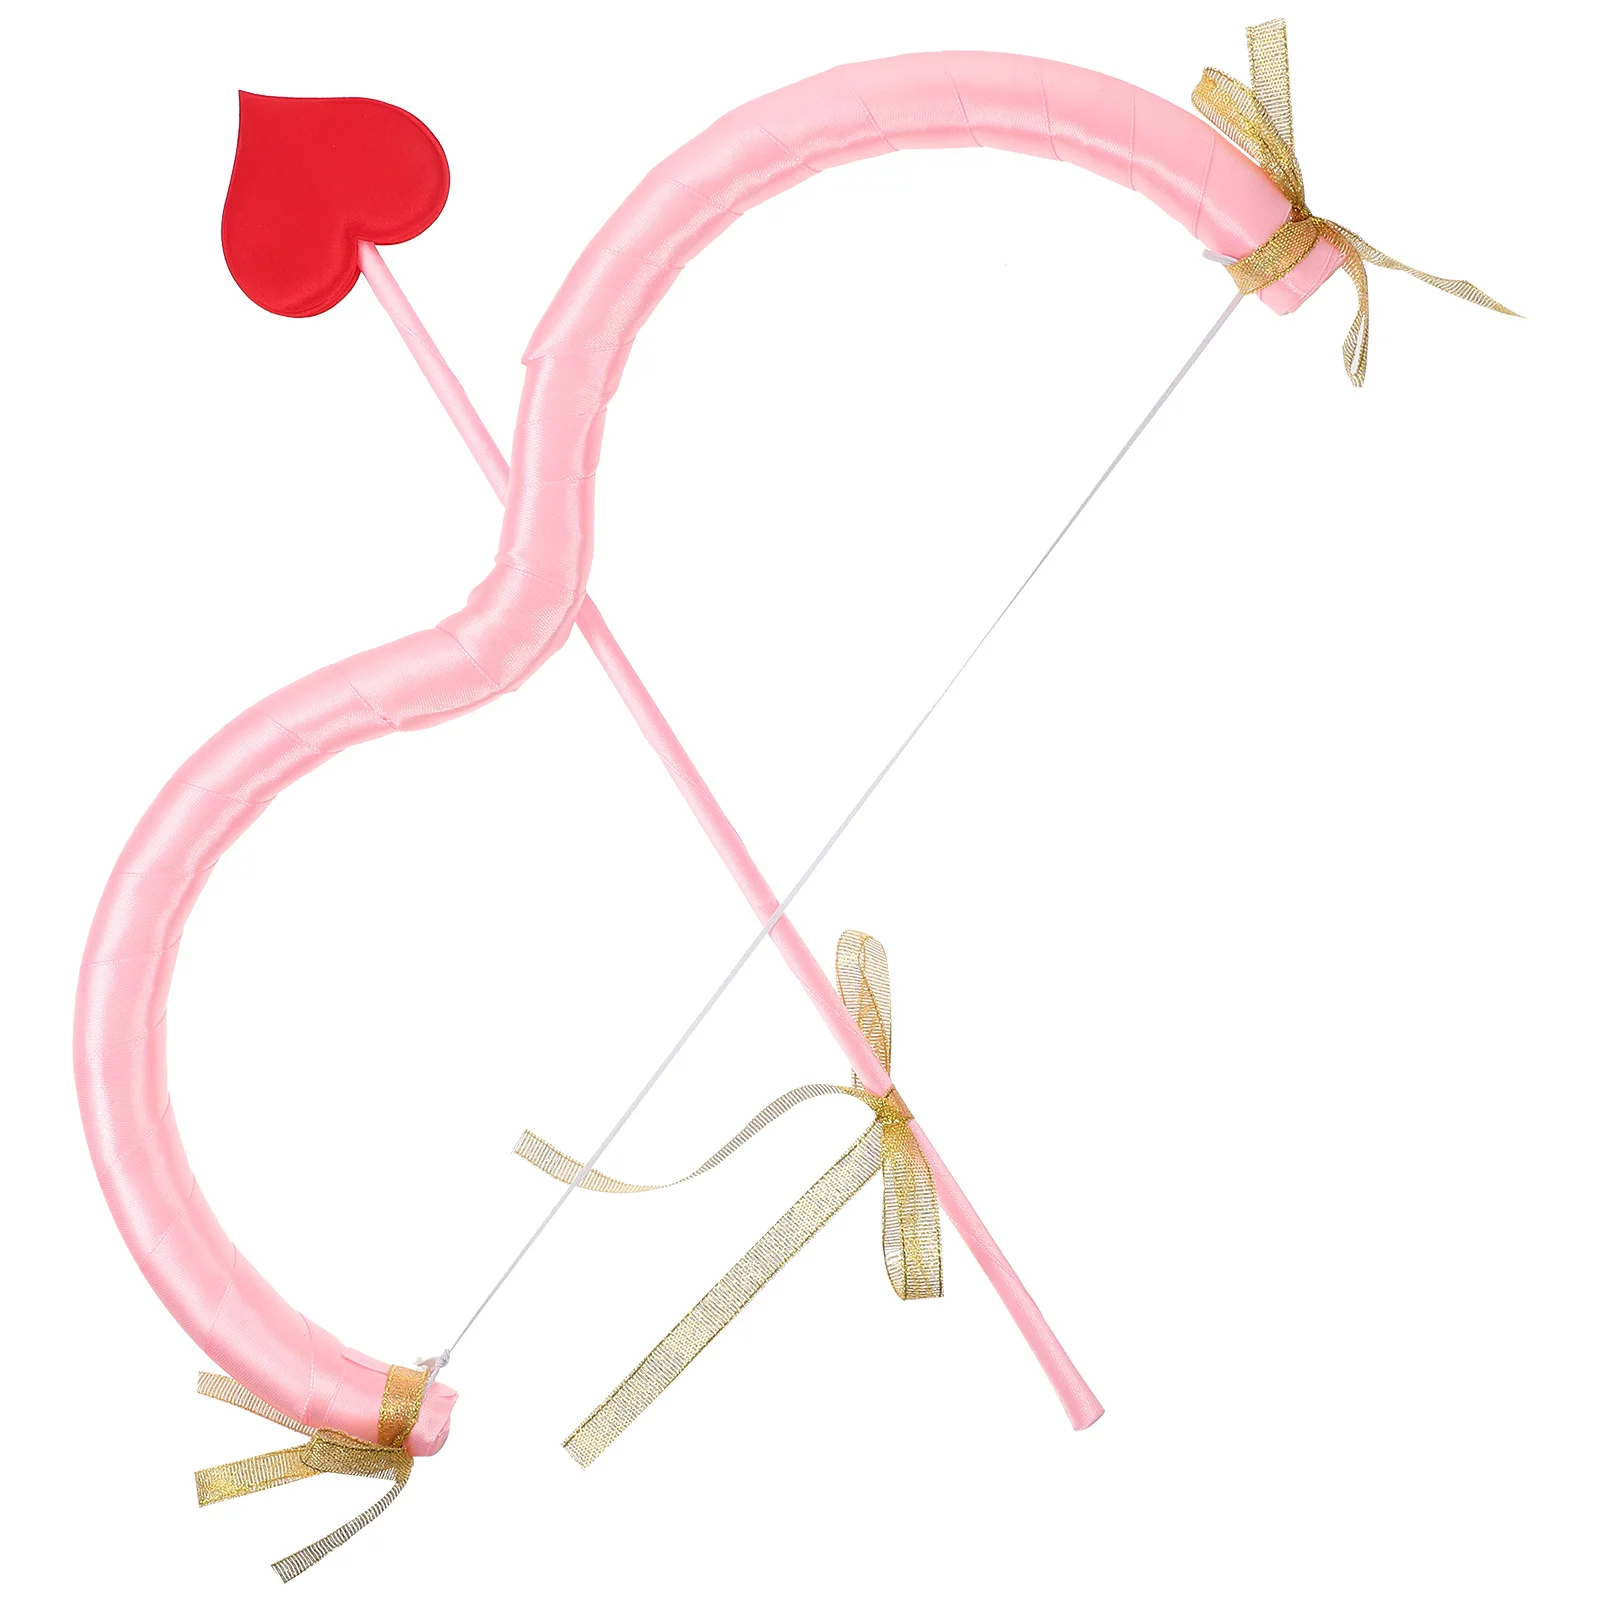 

1 комплект из лука и стрелы с Купидоном, набор костюмов, День Святого Валентина, искусственный Купидон, лук, набор стрел